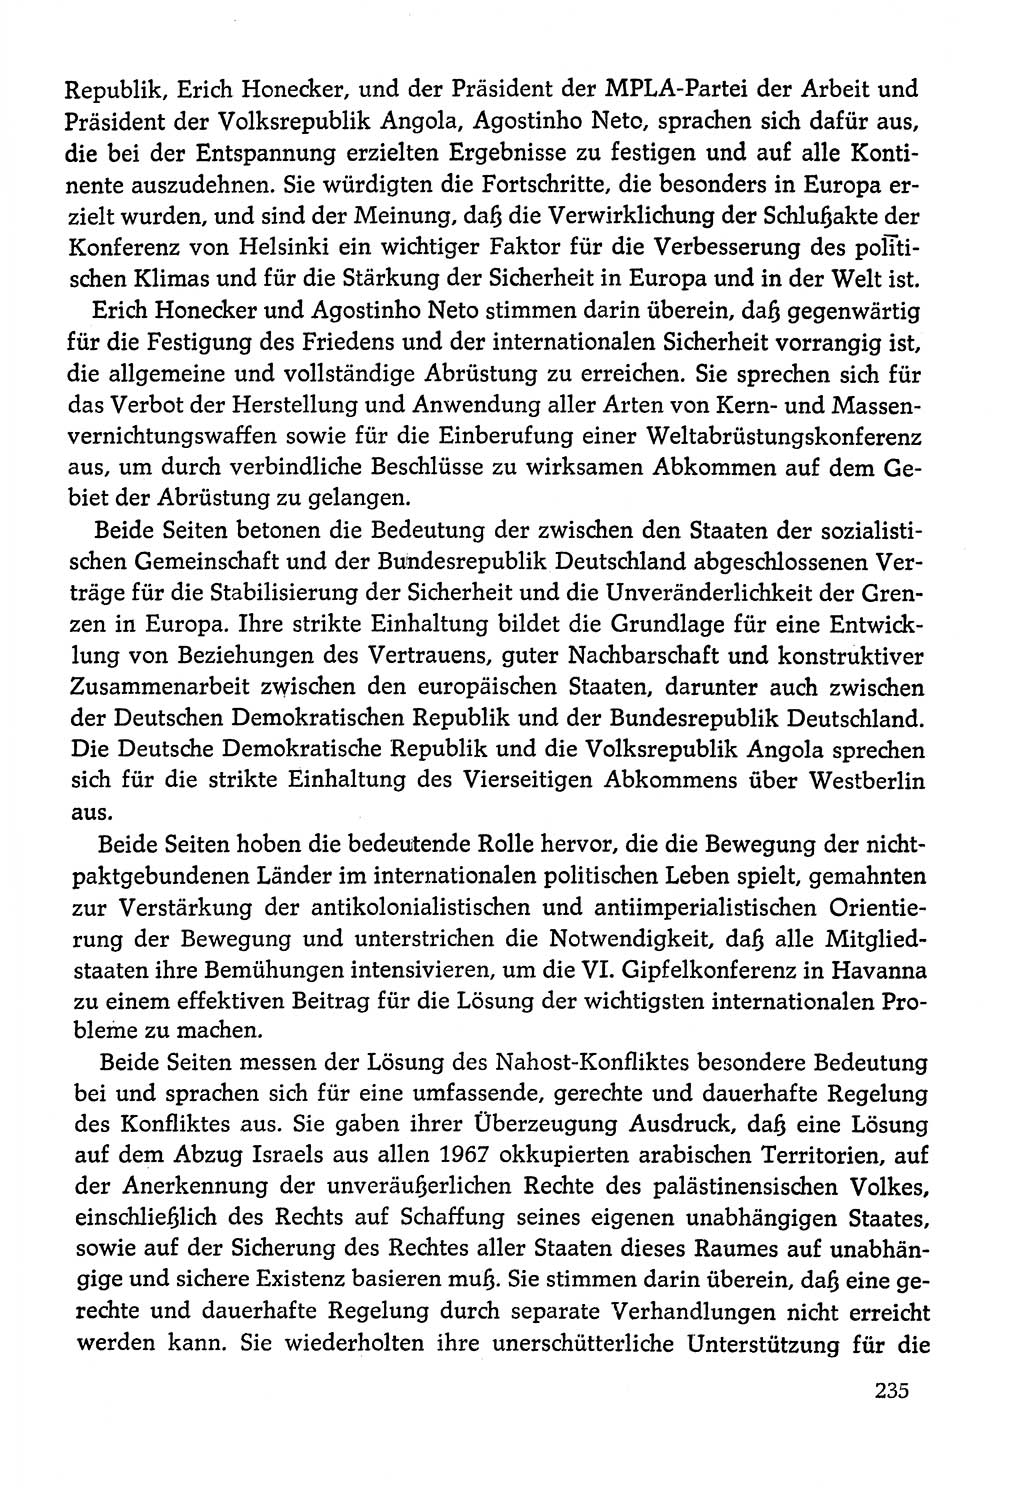 Dokumente der Sozialistischen Einheitspartei Deutschlands (SED) [Deutsche Demokratische Republik (DDR)] 1978-1979, Seite 235 (Dok. SED DDR 1978-1979, S. 235)